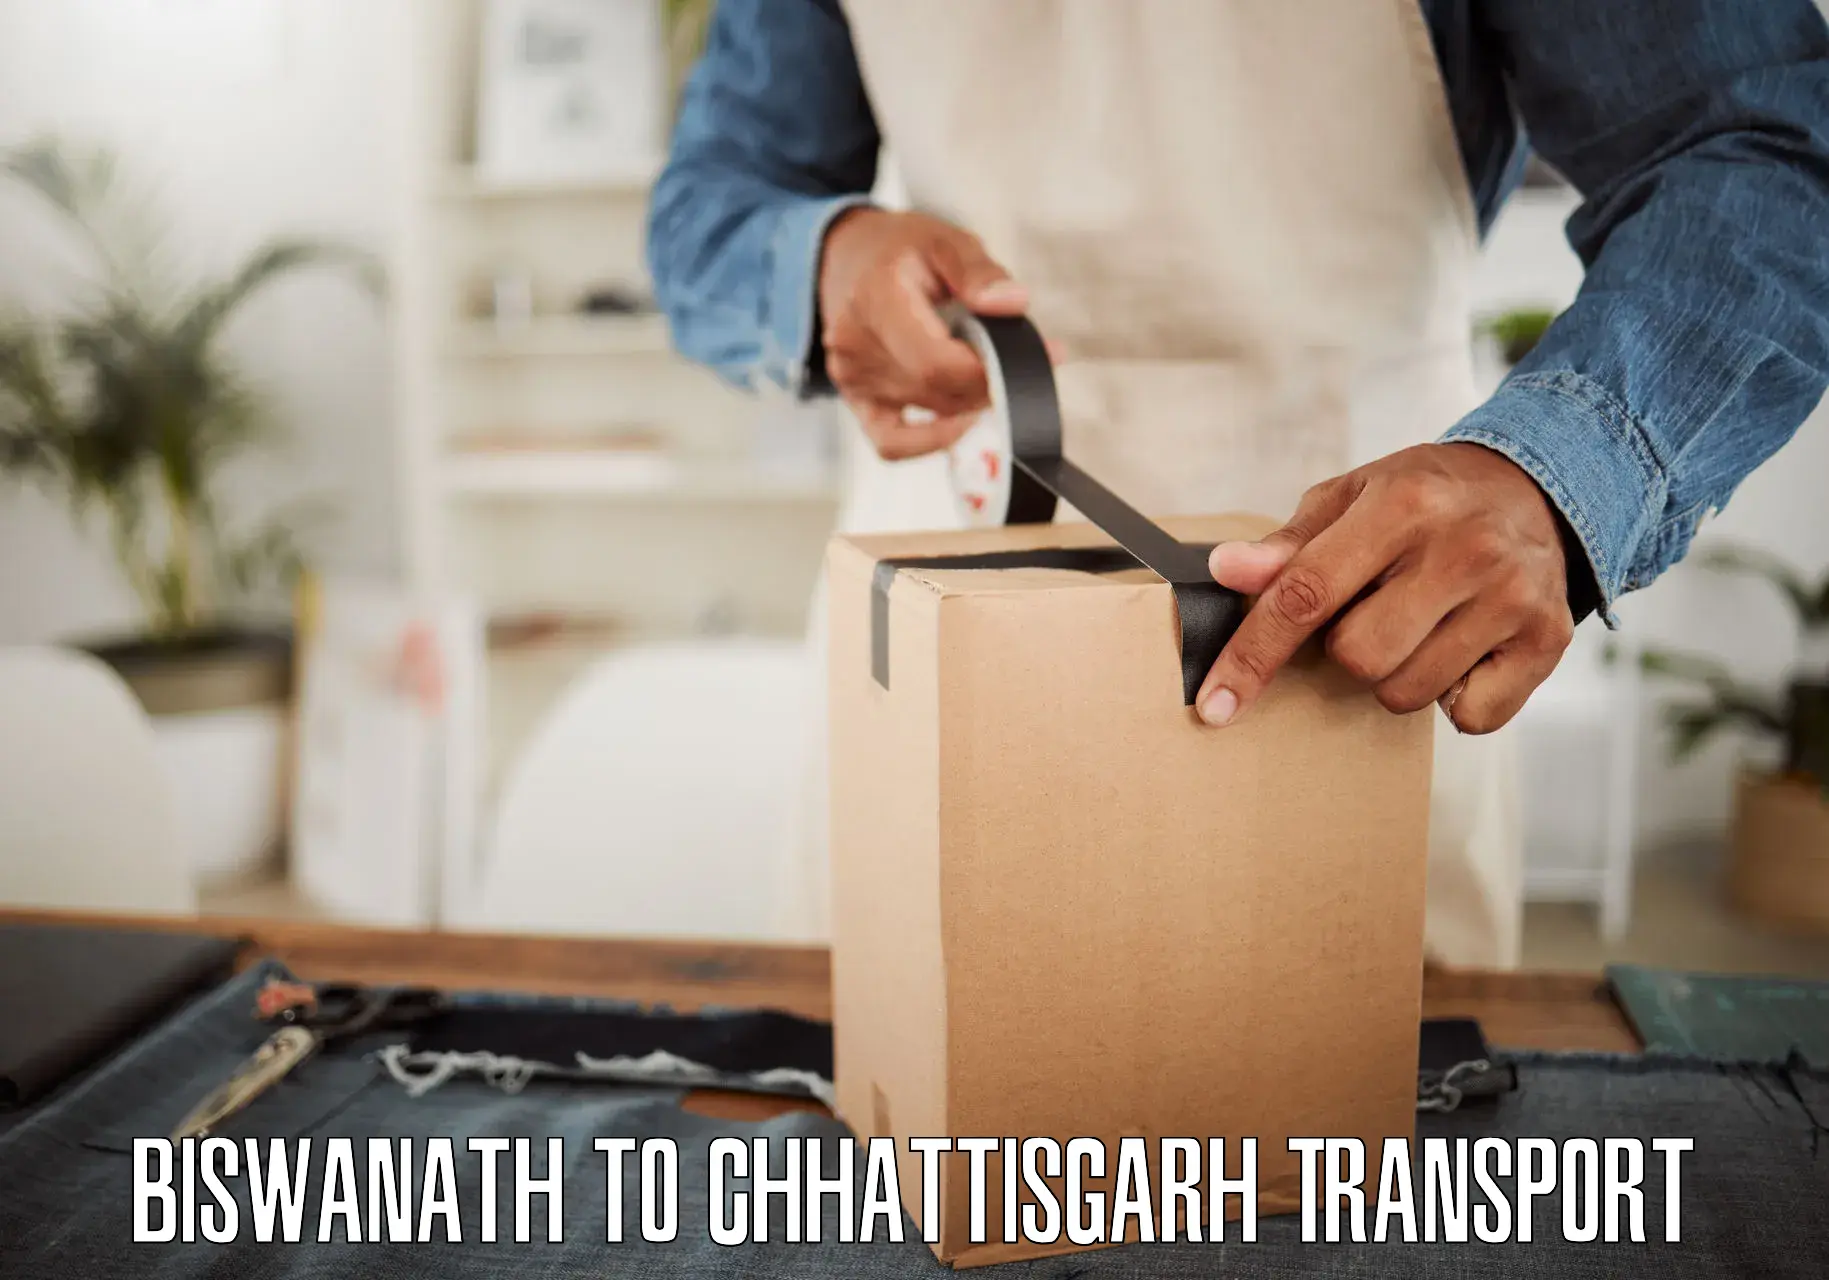 Express transport services Biswanath to Chhattisgarh